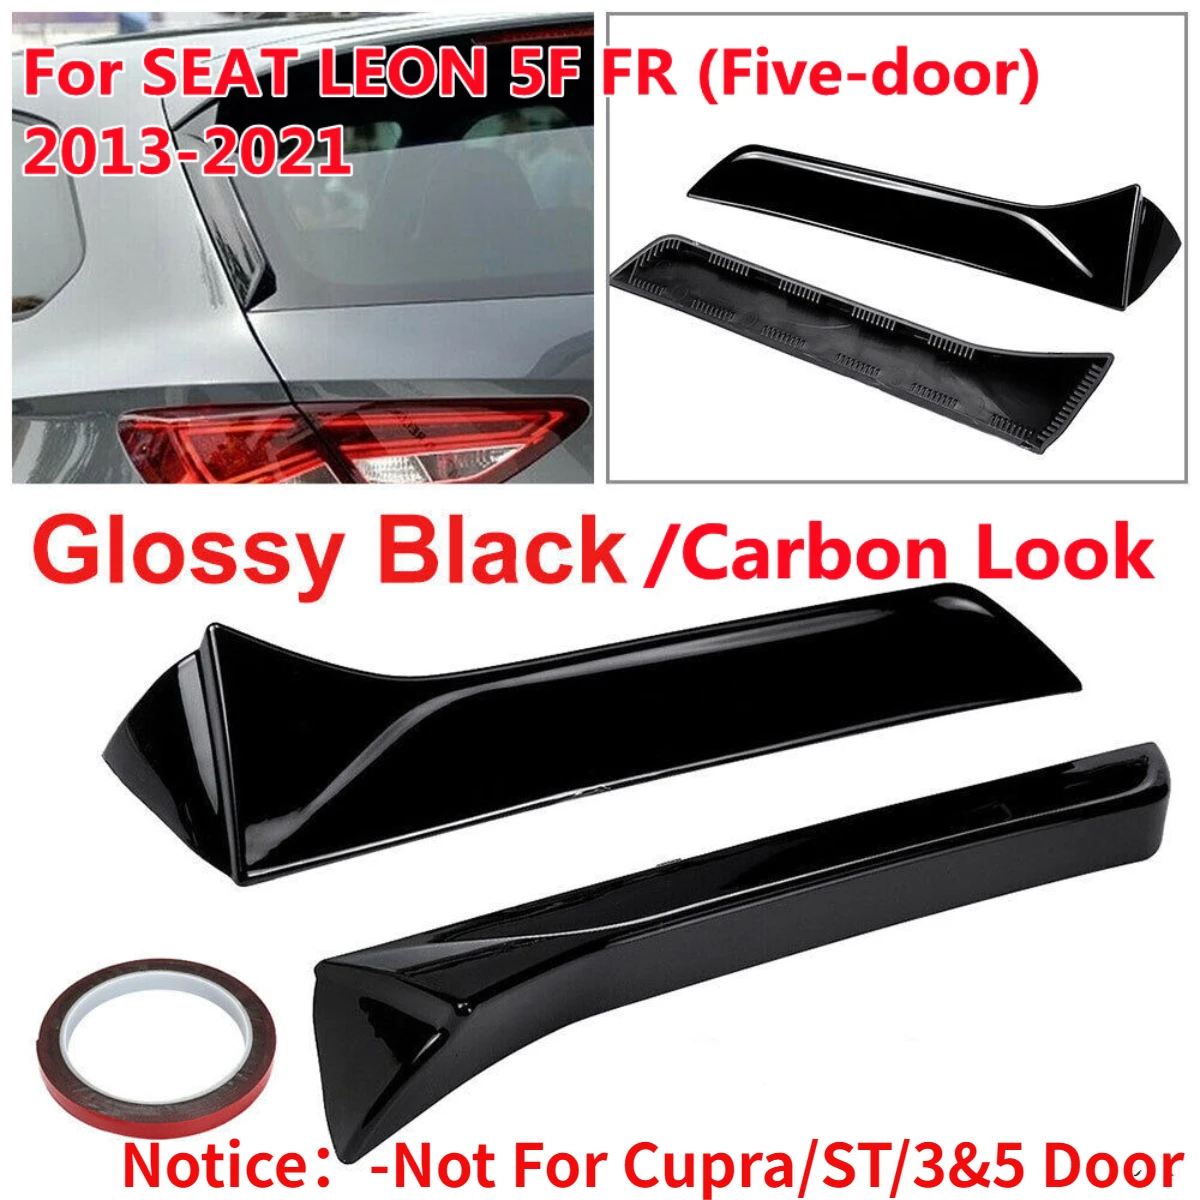 

Car Window Trim Lip Spoiler For Seat Leon 5F FR Mk3 MK3.5 5Door Rear Roof Wing Side Edge Tail Flap Rear Trunk Window Spoiler Lip